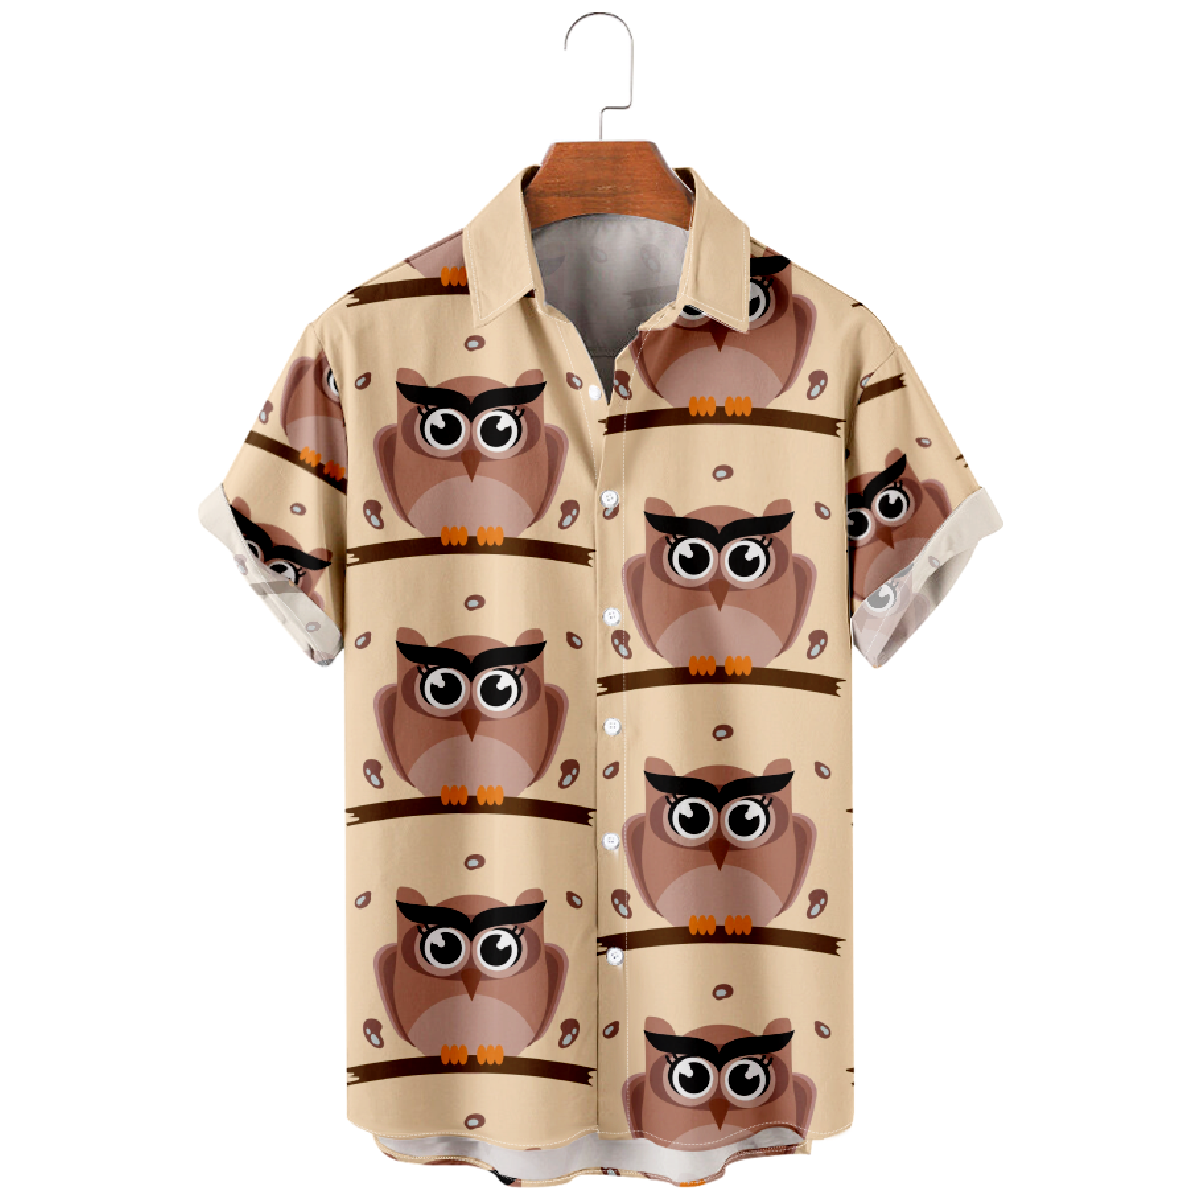 Cute Owl Print Button Up Shirt Men's Casual Shirt Short Sleeve Straight Collar Regular Fit